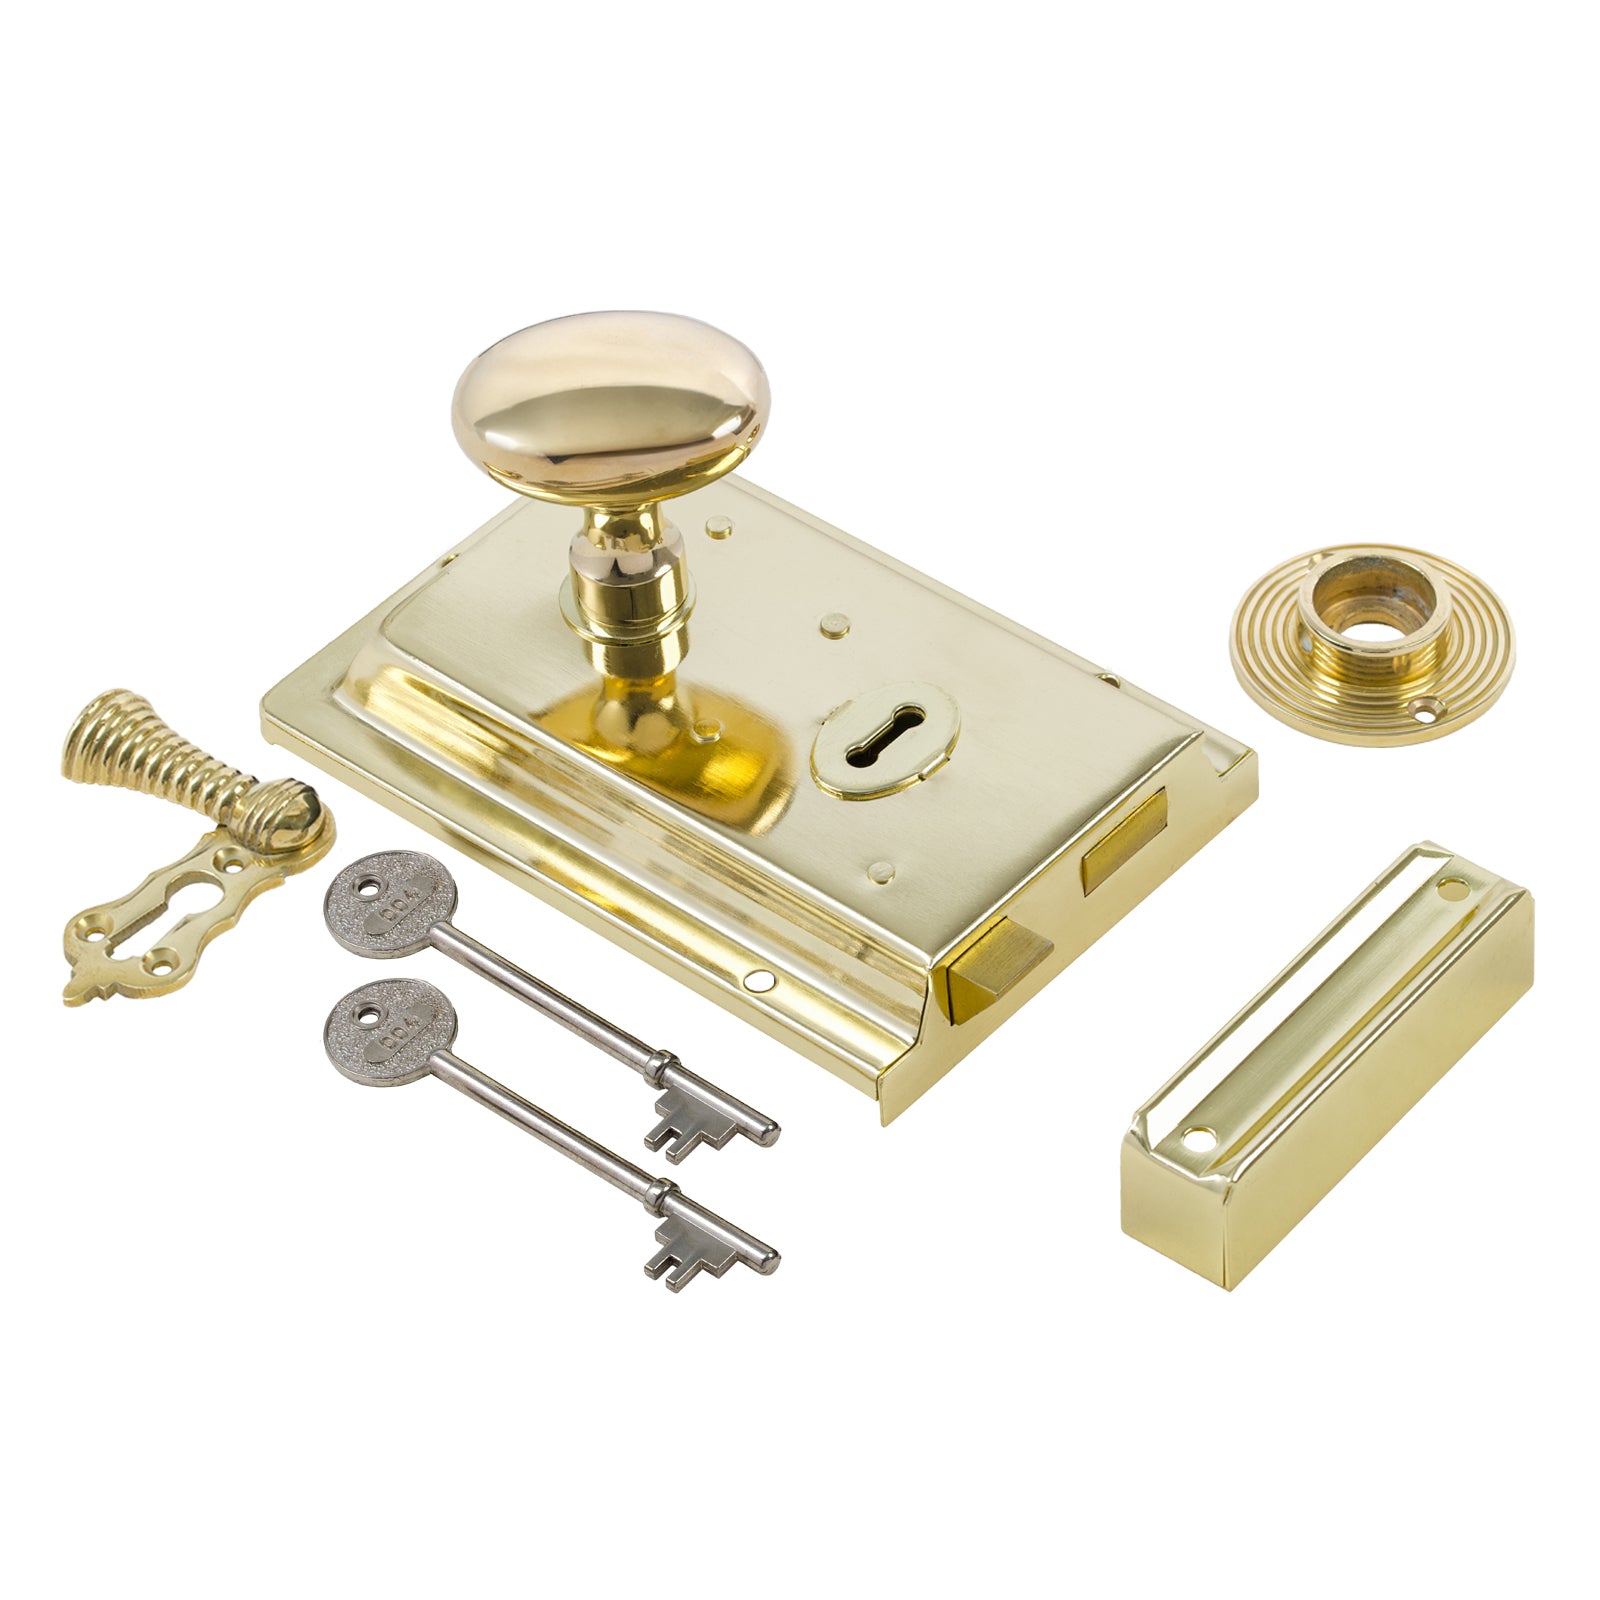 SHOW Oval Door Knob Set - Polished Brass On Polished Brass Rim Lock